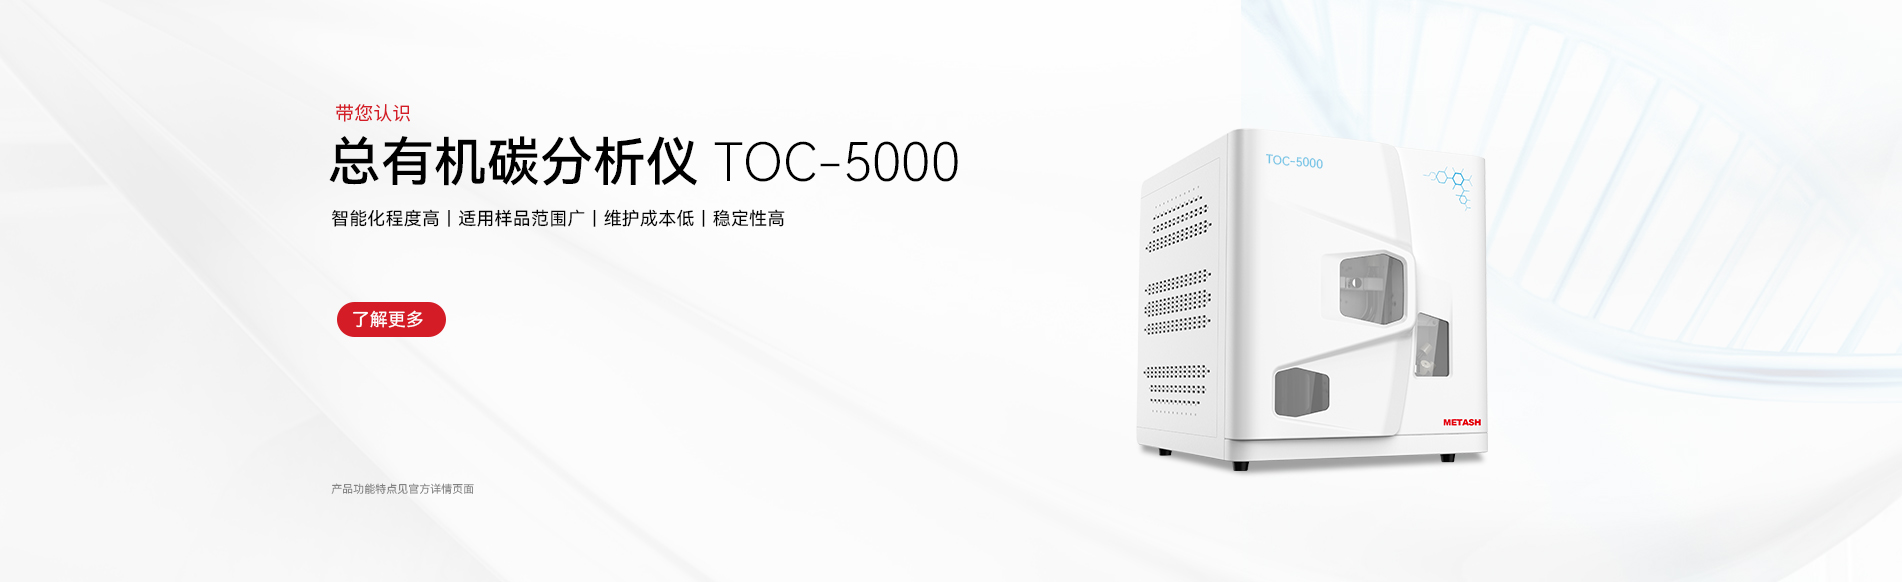 TOC-5000 总有机碳分析仪